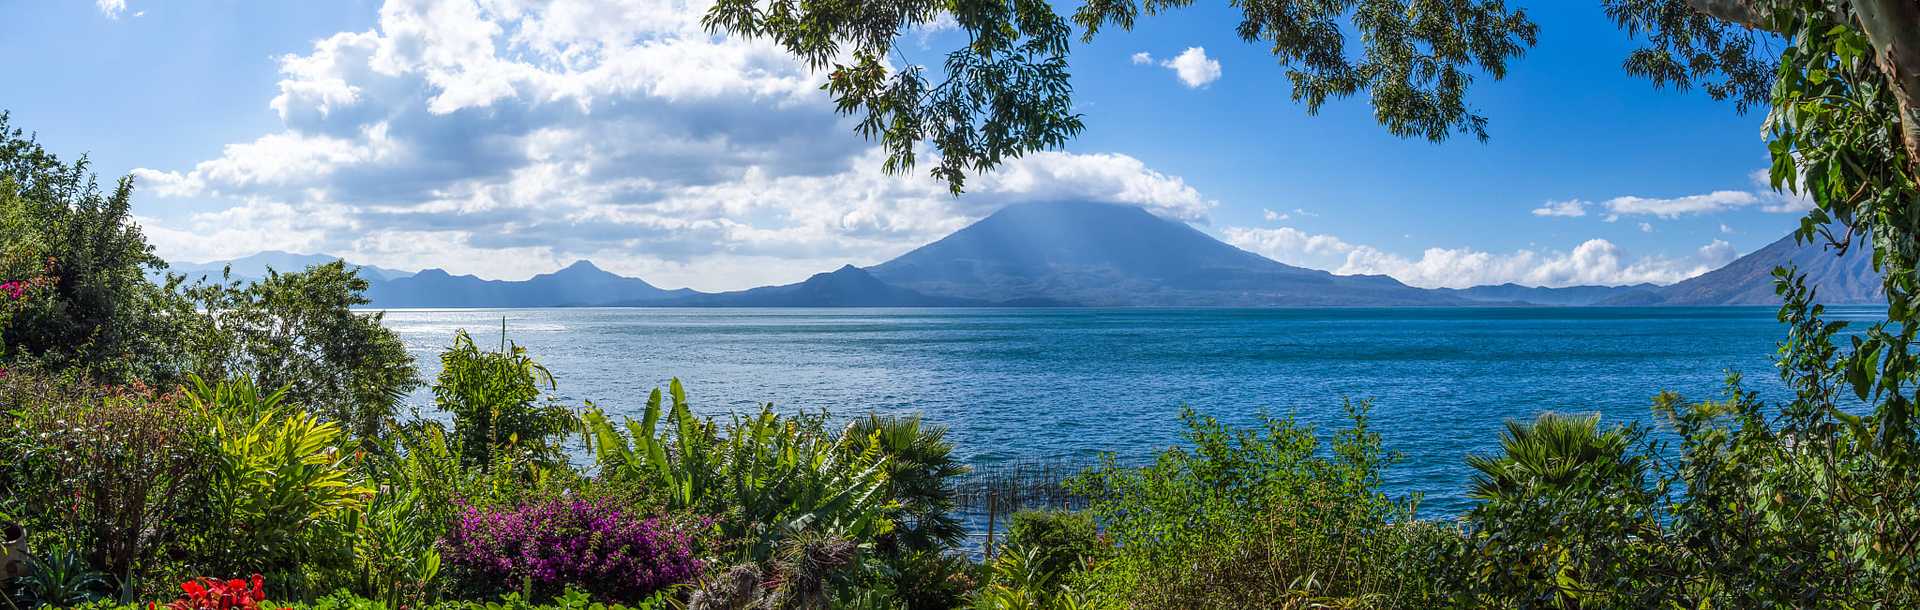 Lake Atitlán and Volcano Tolimán in Guatemala